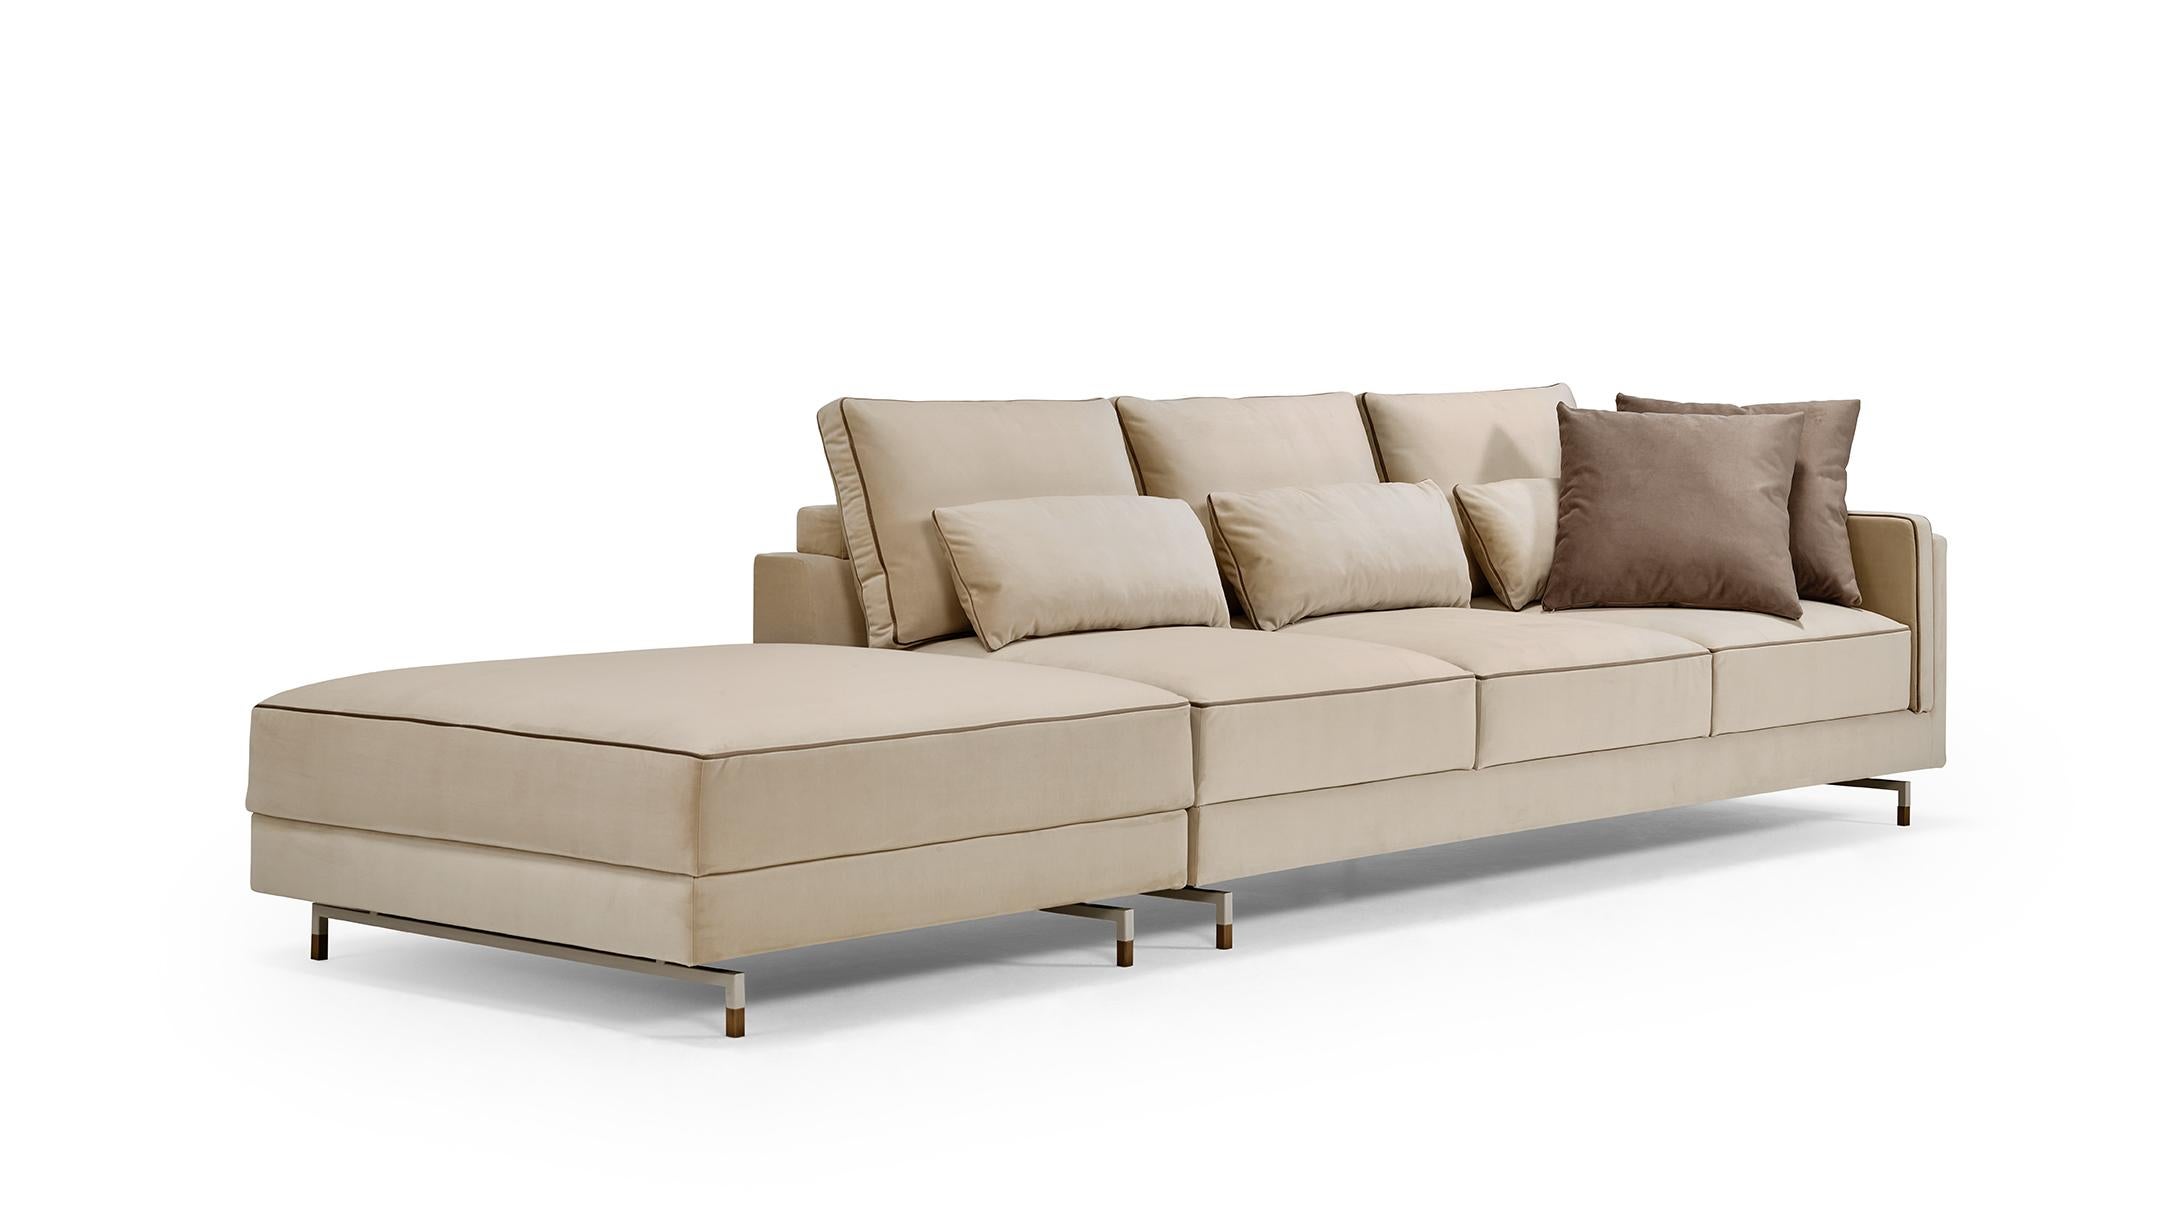 Portuguese SINATRA Modular Sofa For Sale